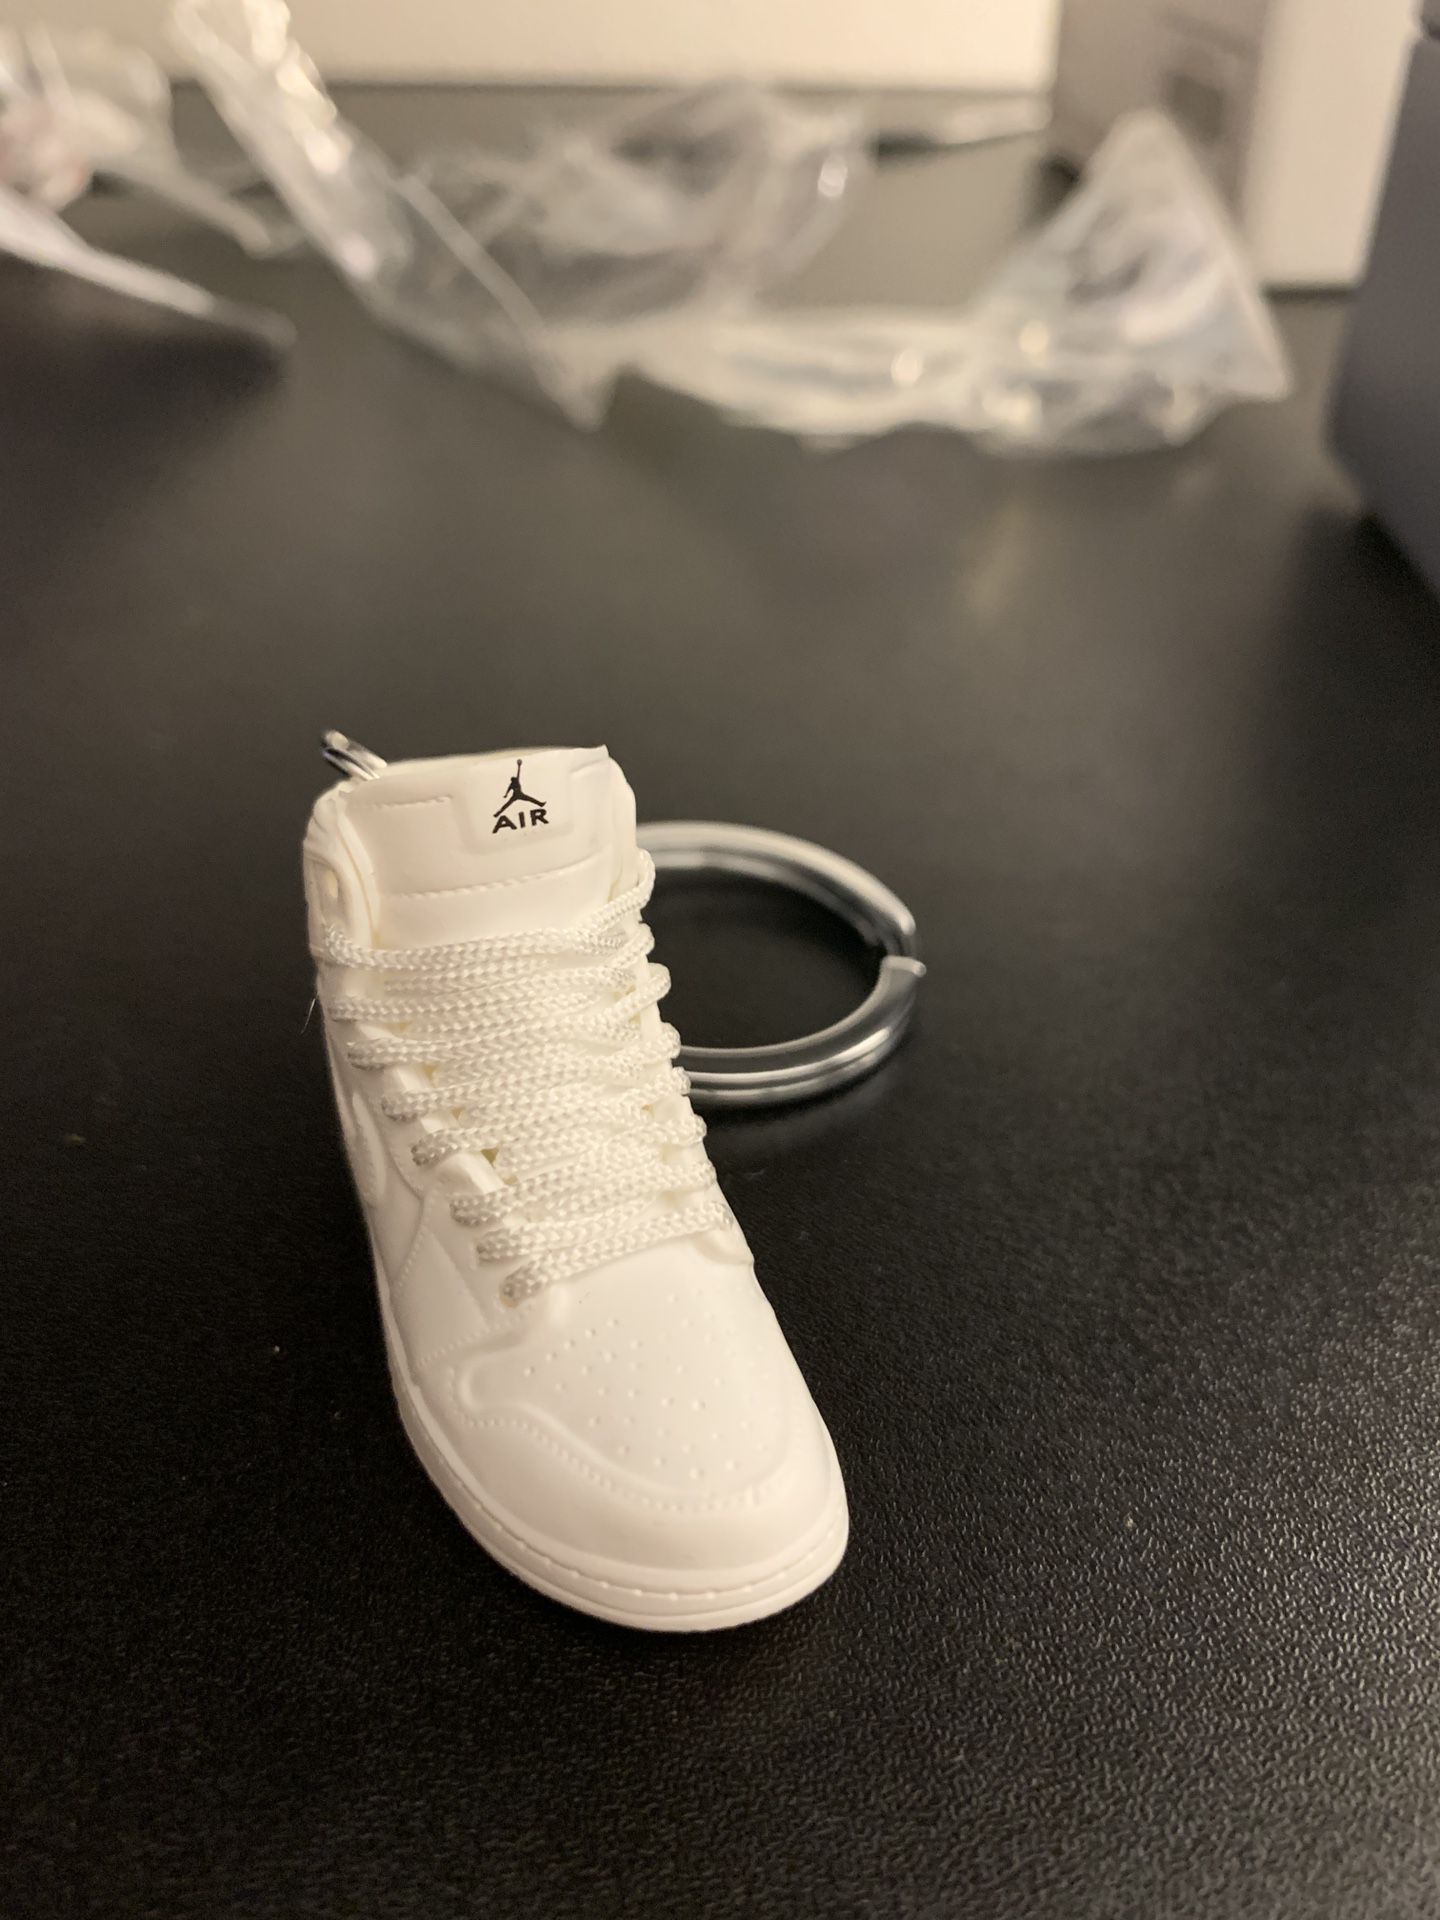 Mini Realistic Jordan Nike Air Force 1 Shoe Keychain